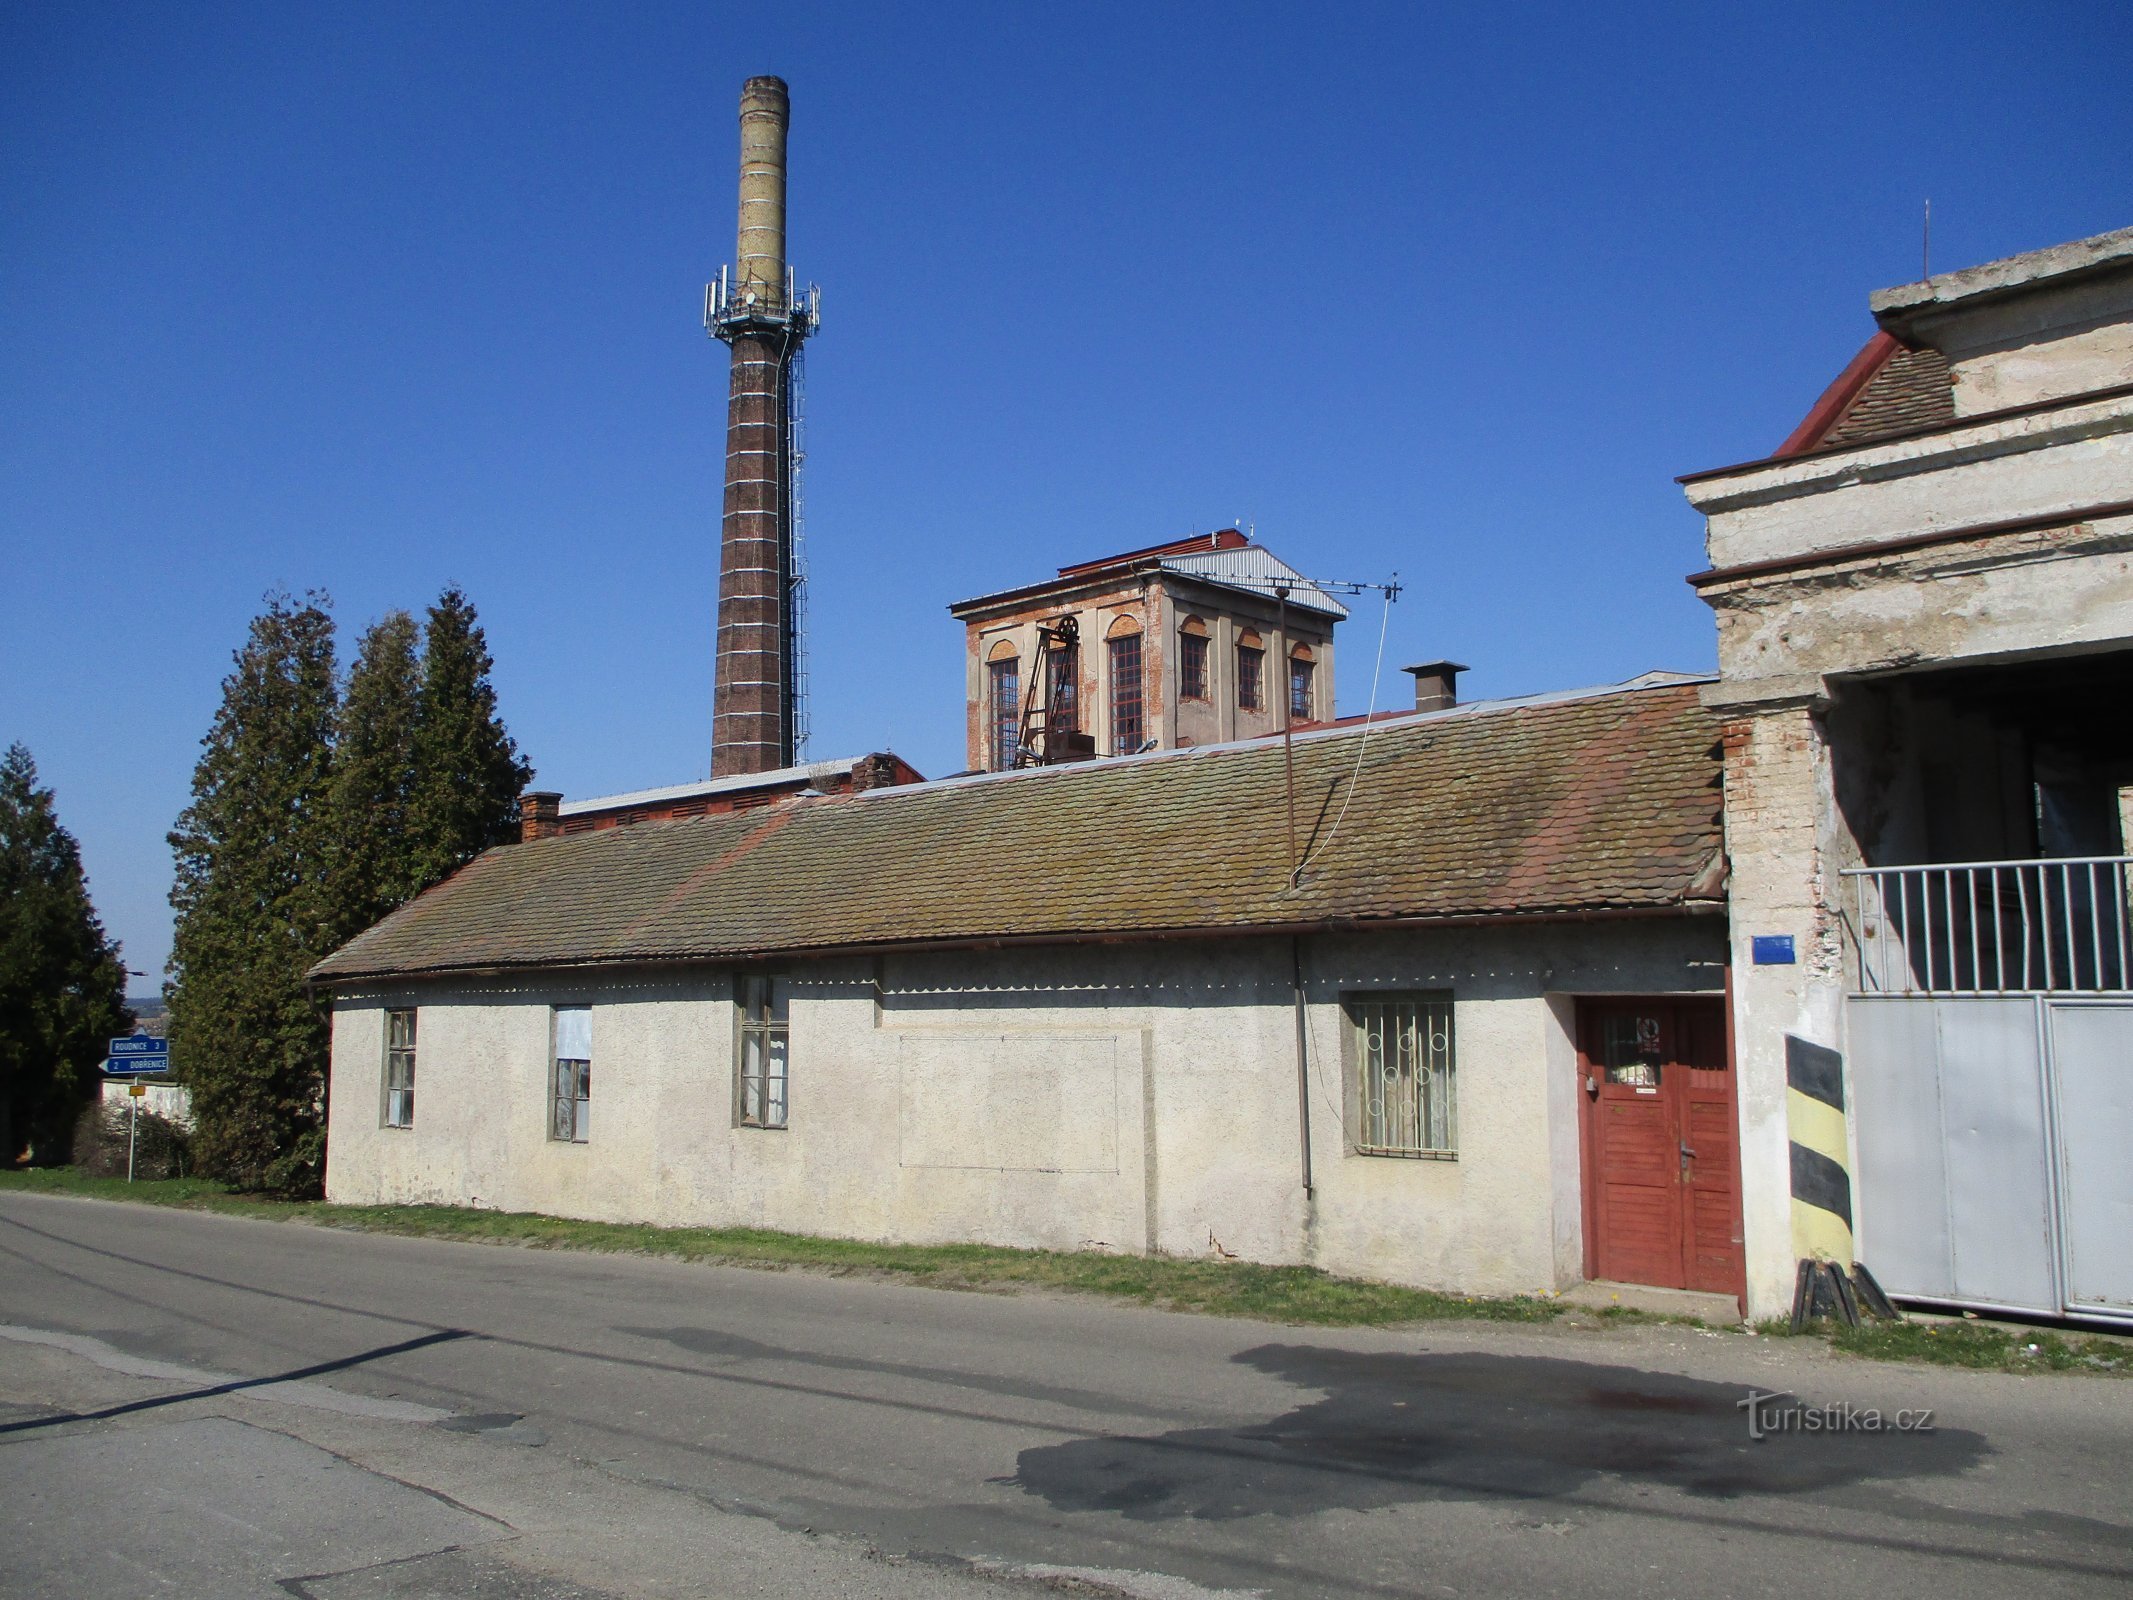 Volt cukorgyár (Syrovátka, 7.4.2020.)